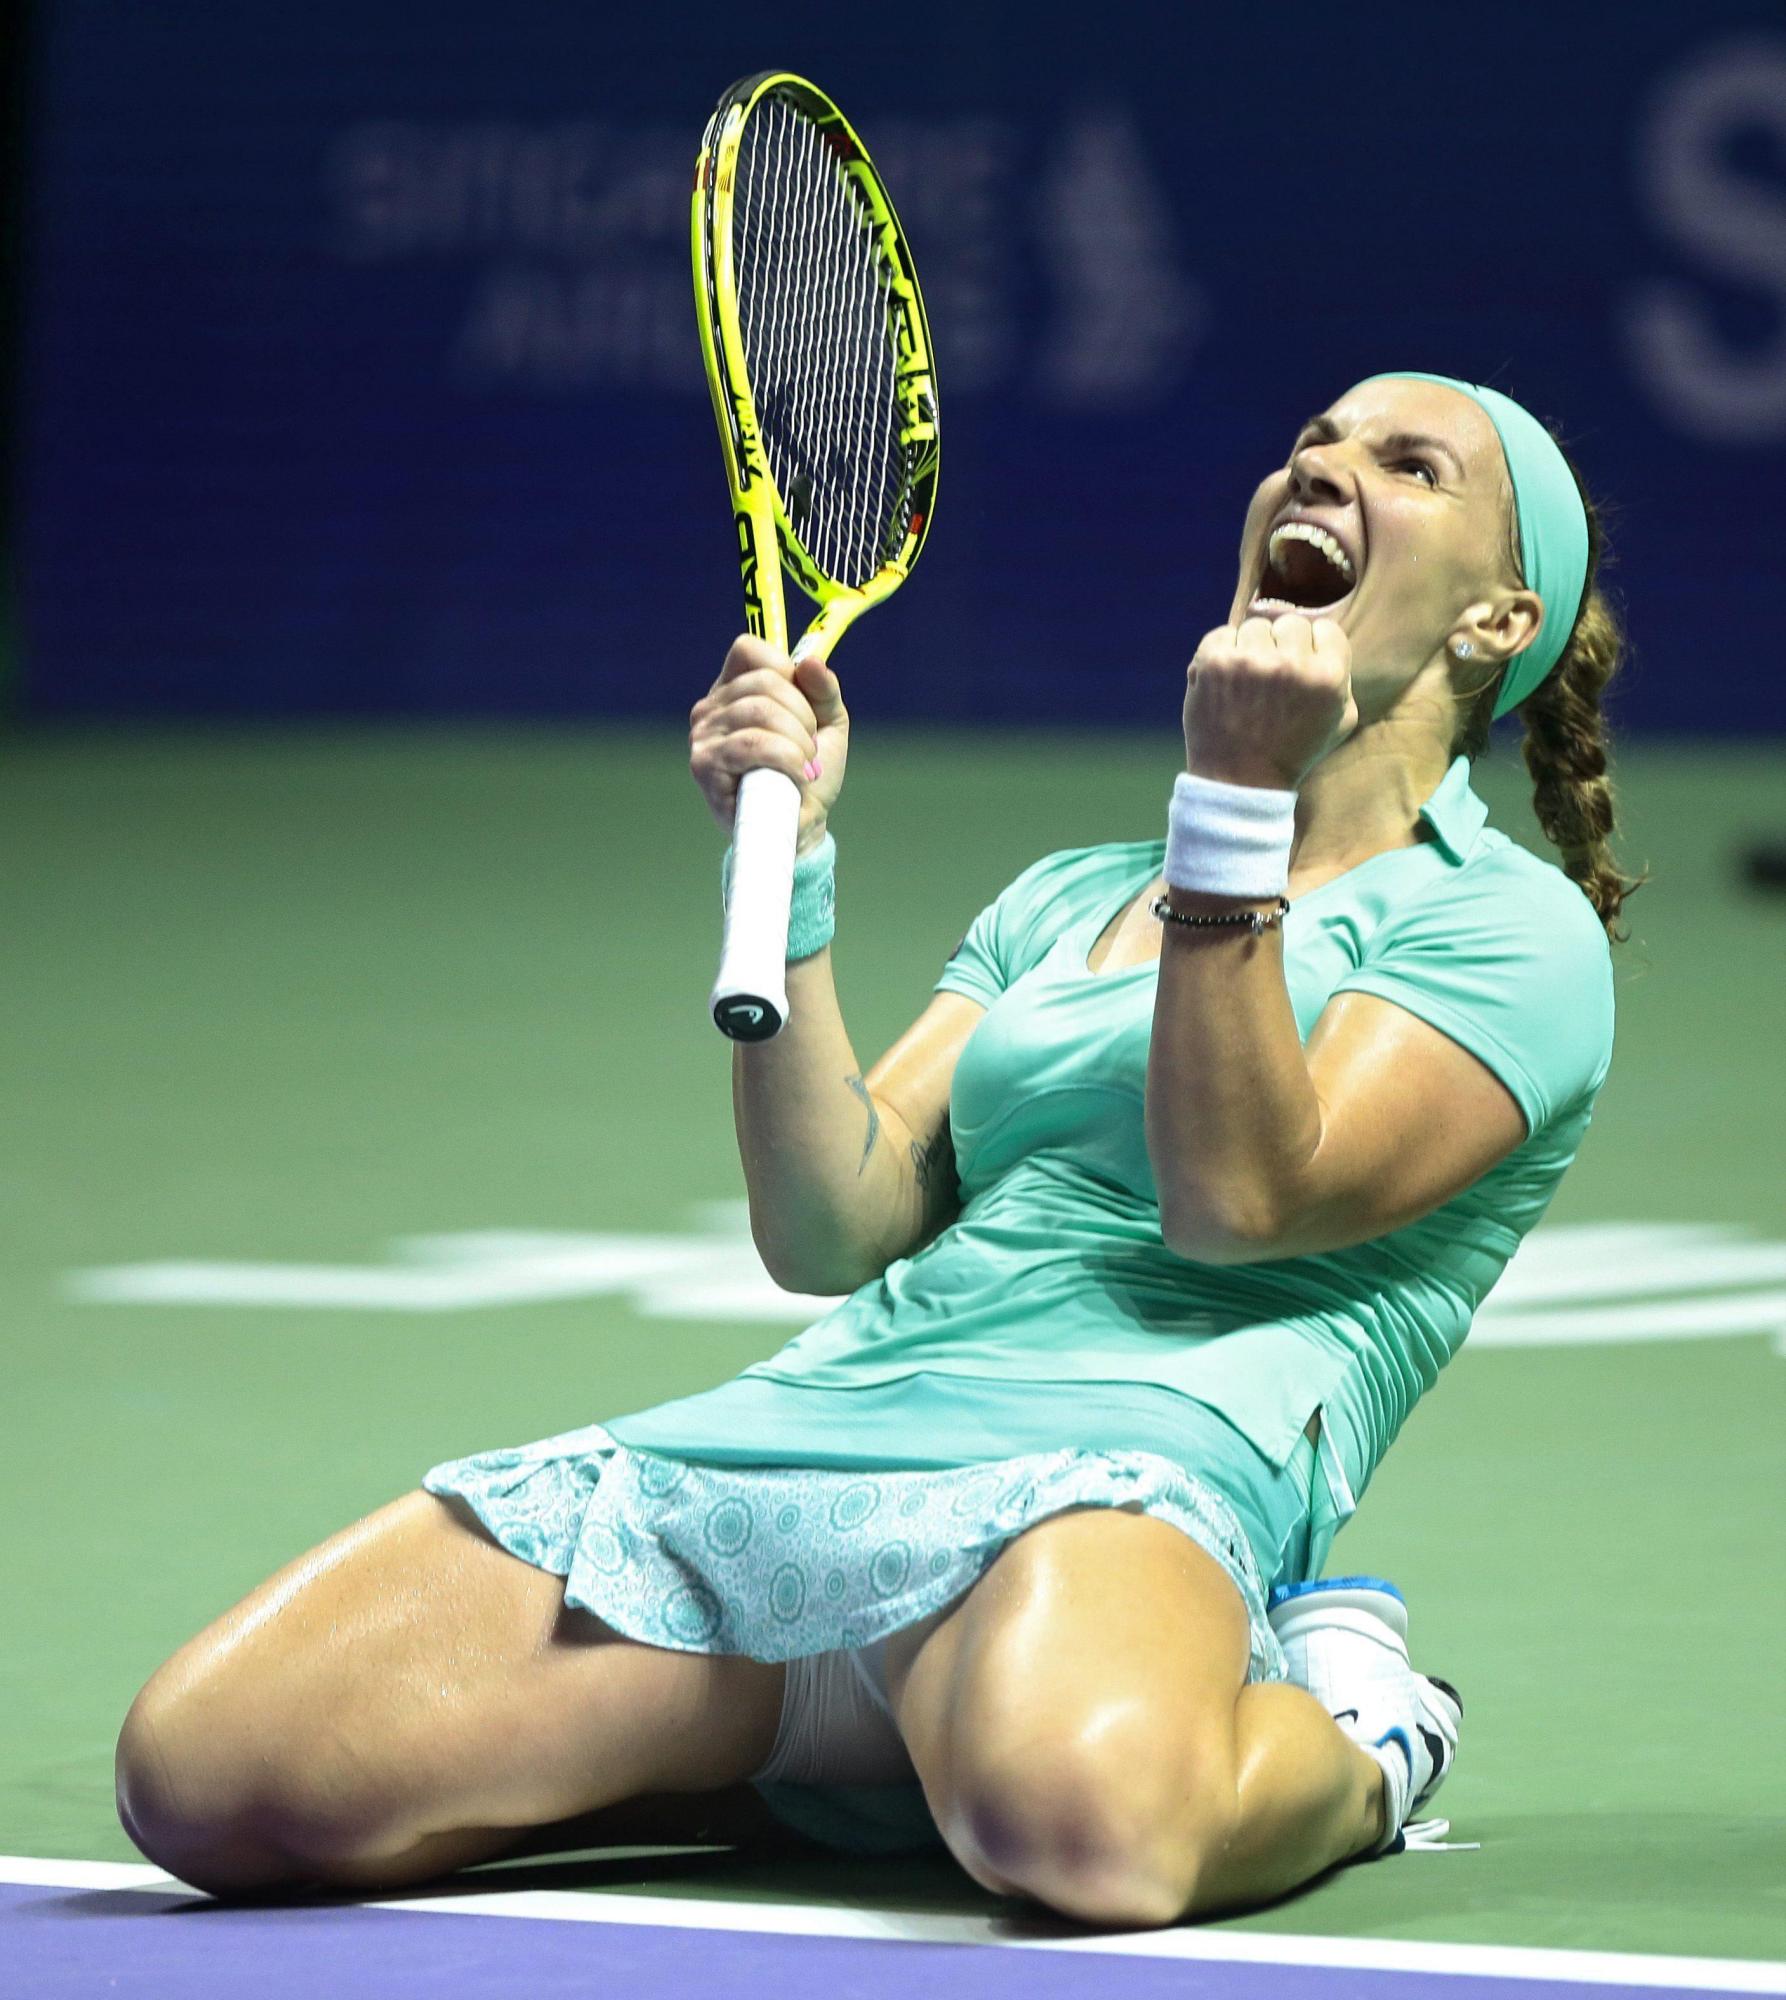 La tenista rusa Svetlana Kuznetsova celebra su victoria contra la checa Karolina Pliskova durante un partido de individuales de la ronda robin del Masters femenino de Singapur.